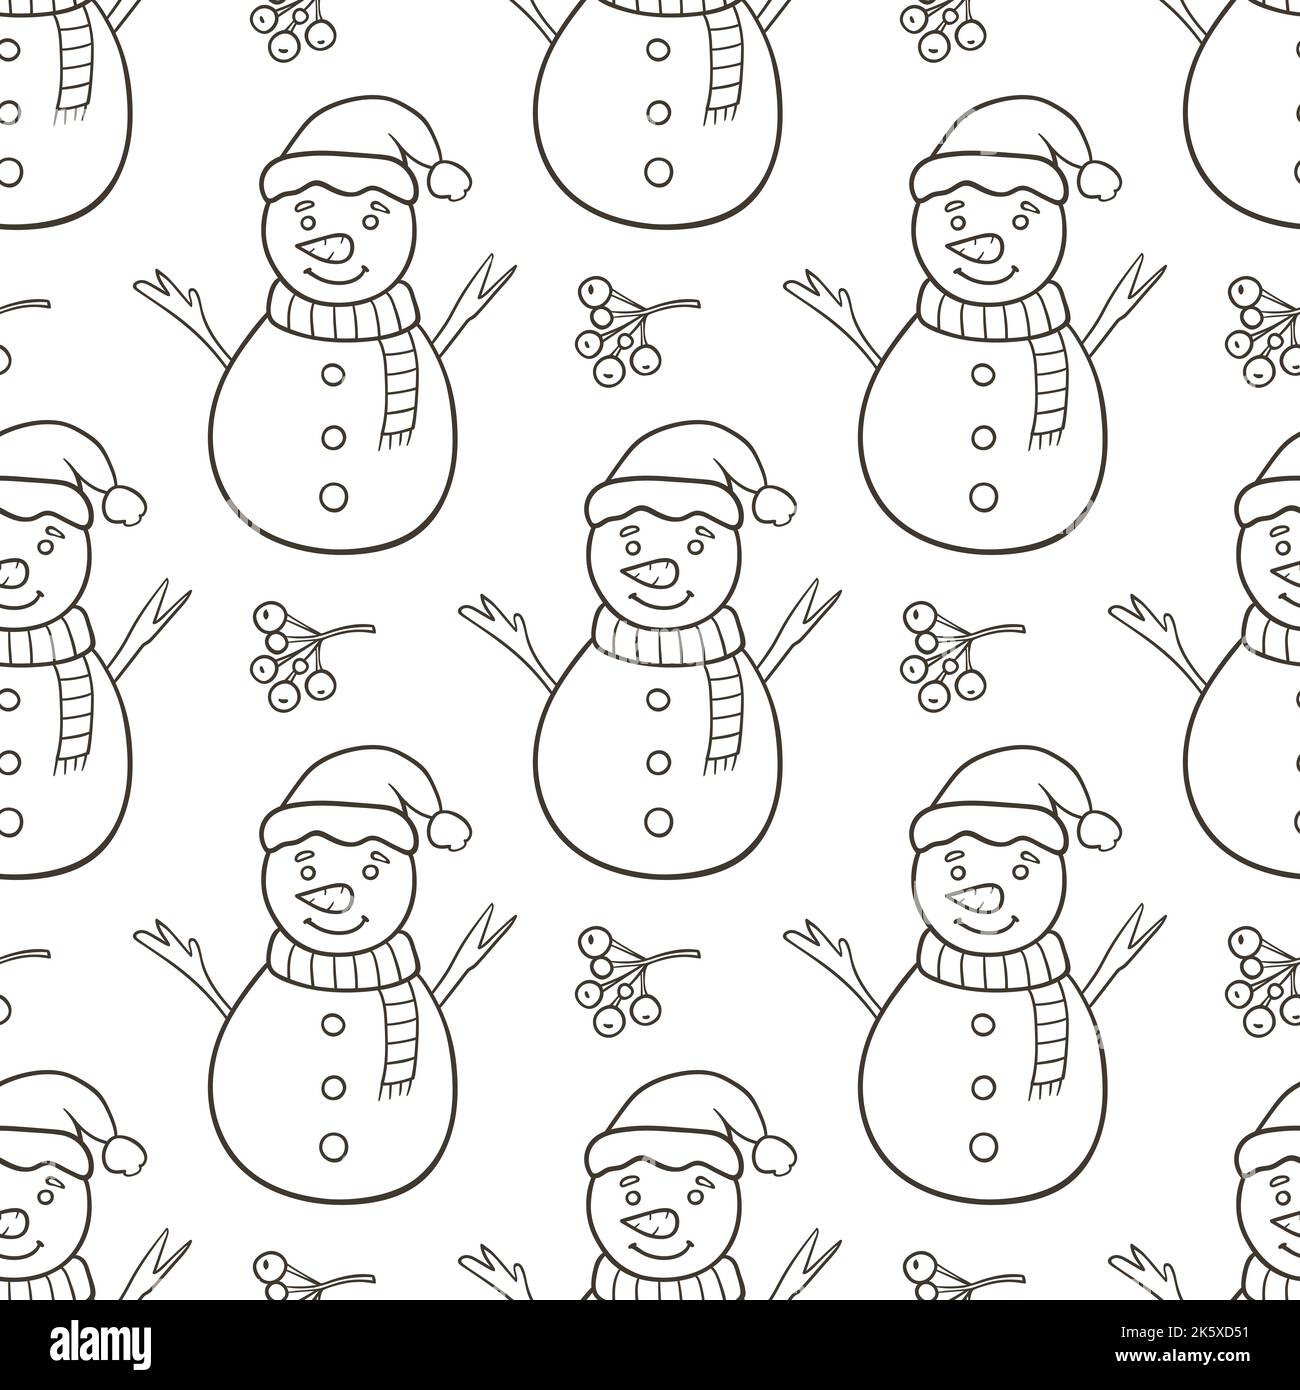 Festliches nahtloses Muster mit Schneemann auf weißem Hintergrund. Handgezeichnete Doodle-Illustration Stockfoto